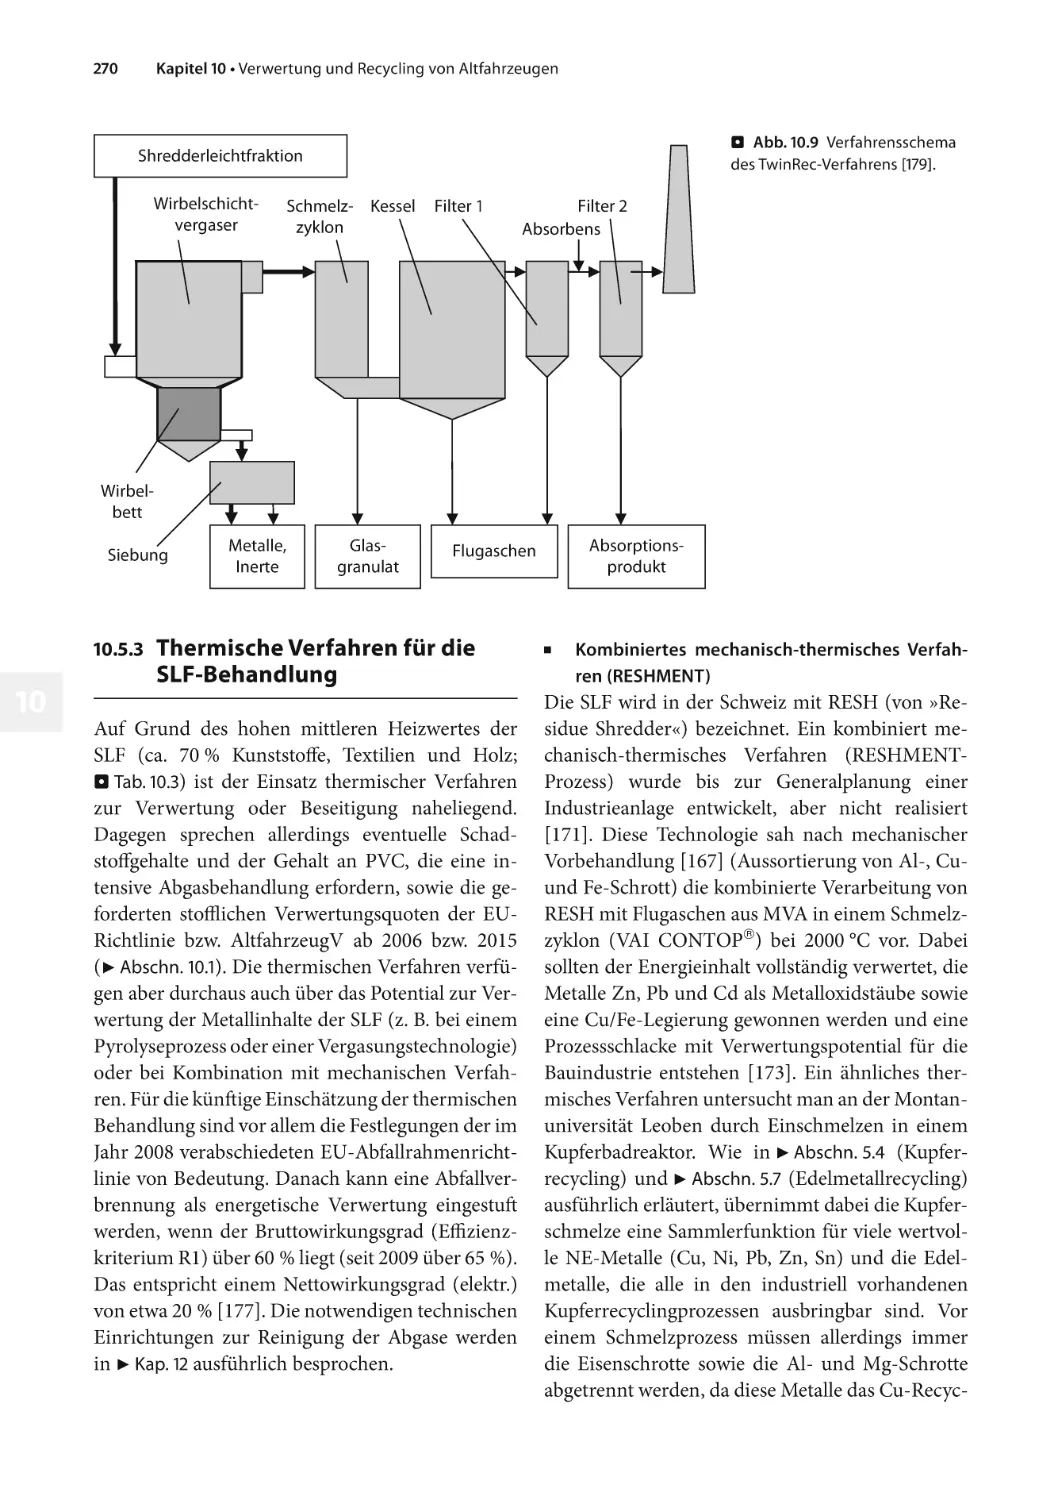 10.5.3 Thermische Verfahren für die SLF-Behandlung